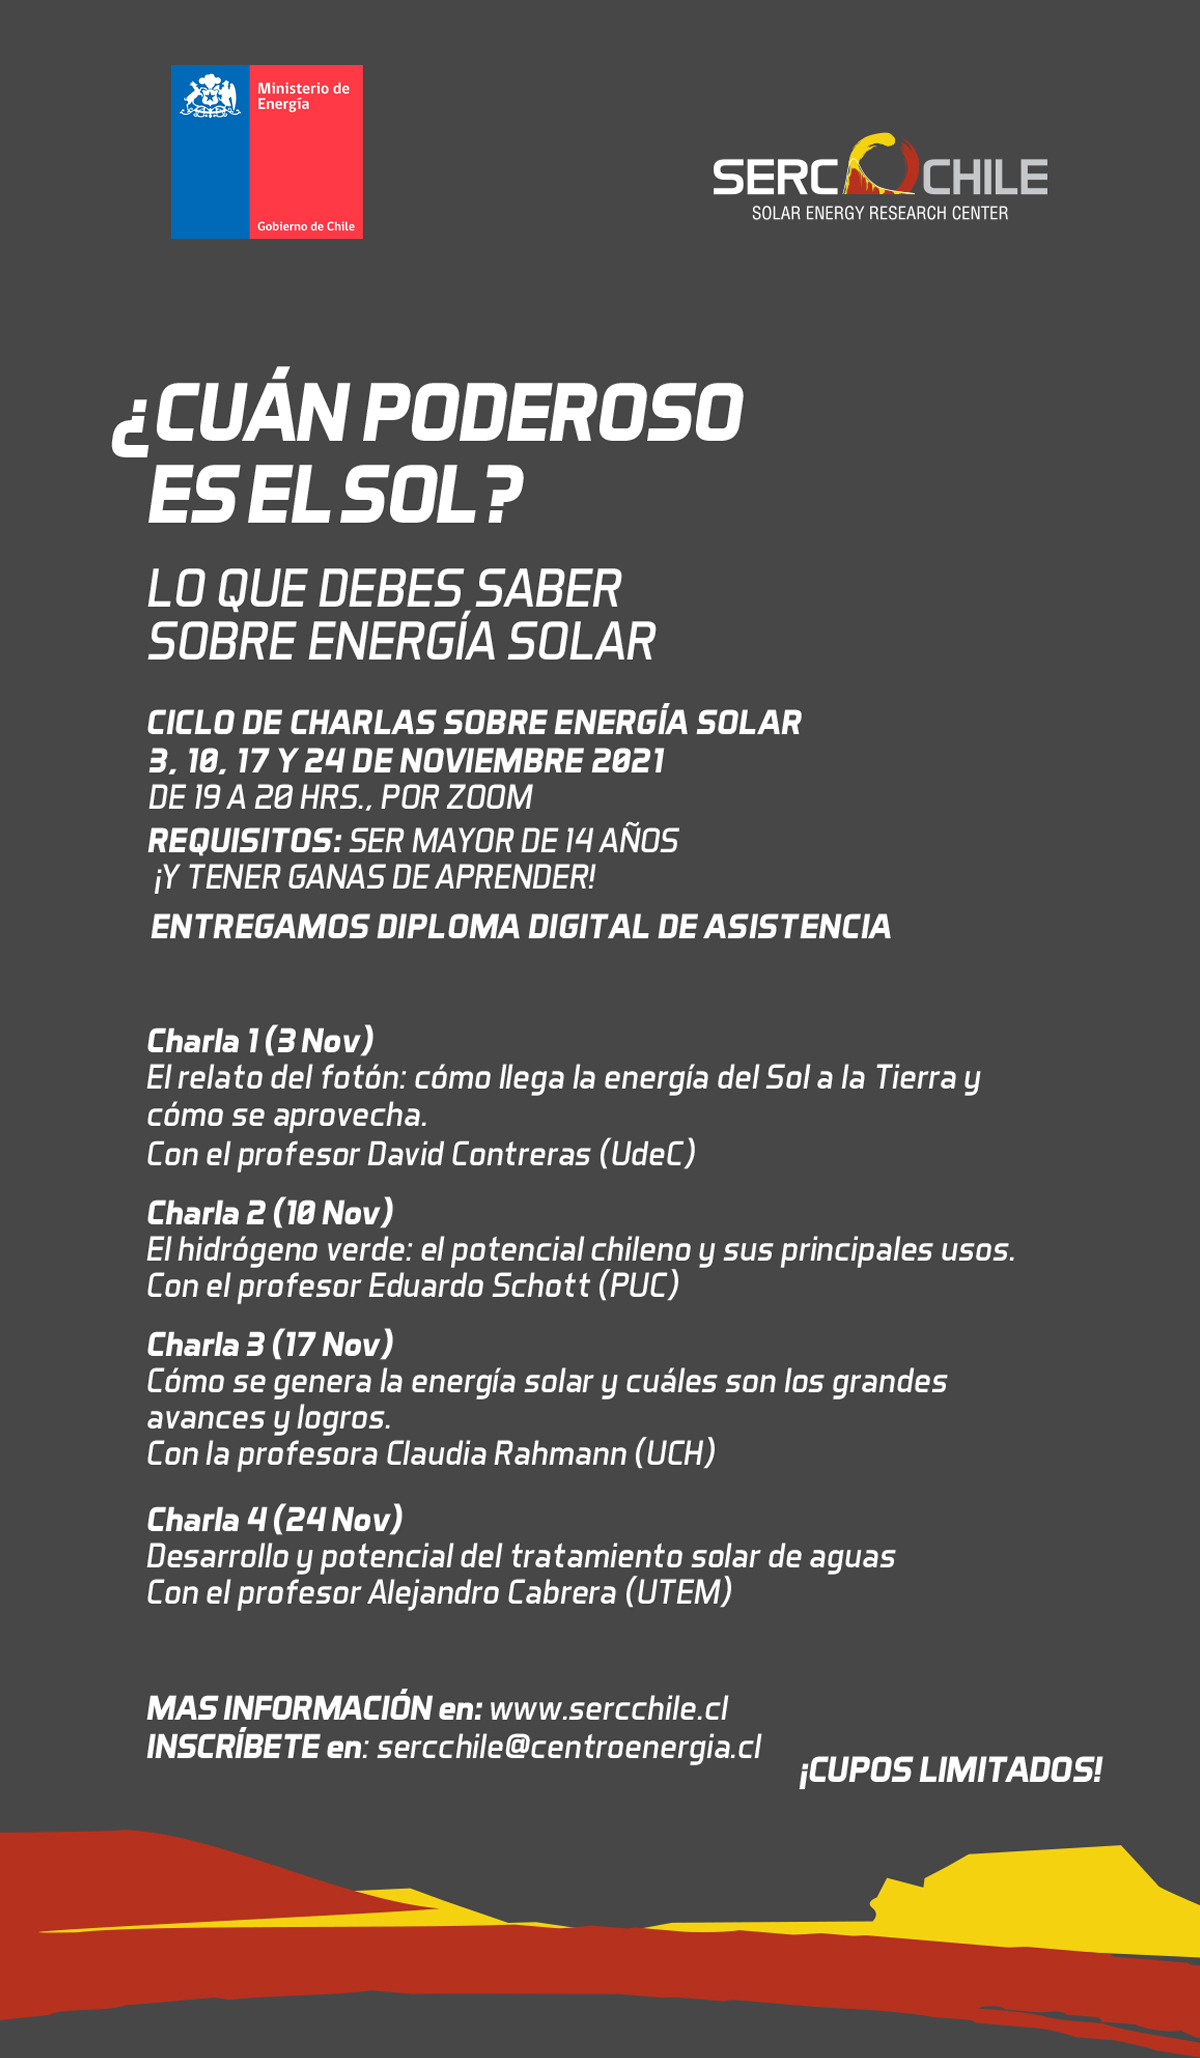 SERC Chile Organiza Ciclo Gratuito De Charlas Sobre Energía Solar